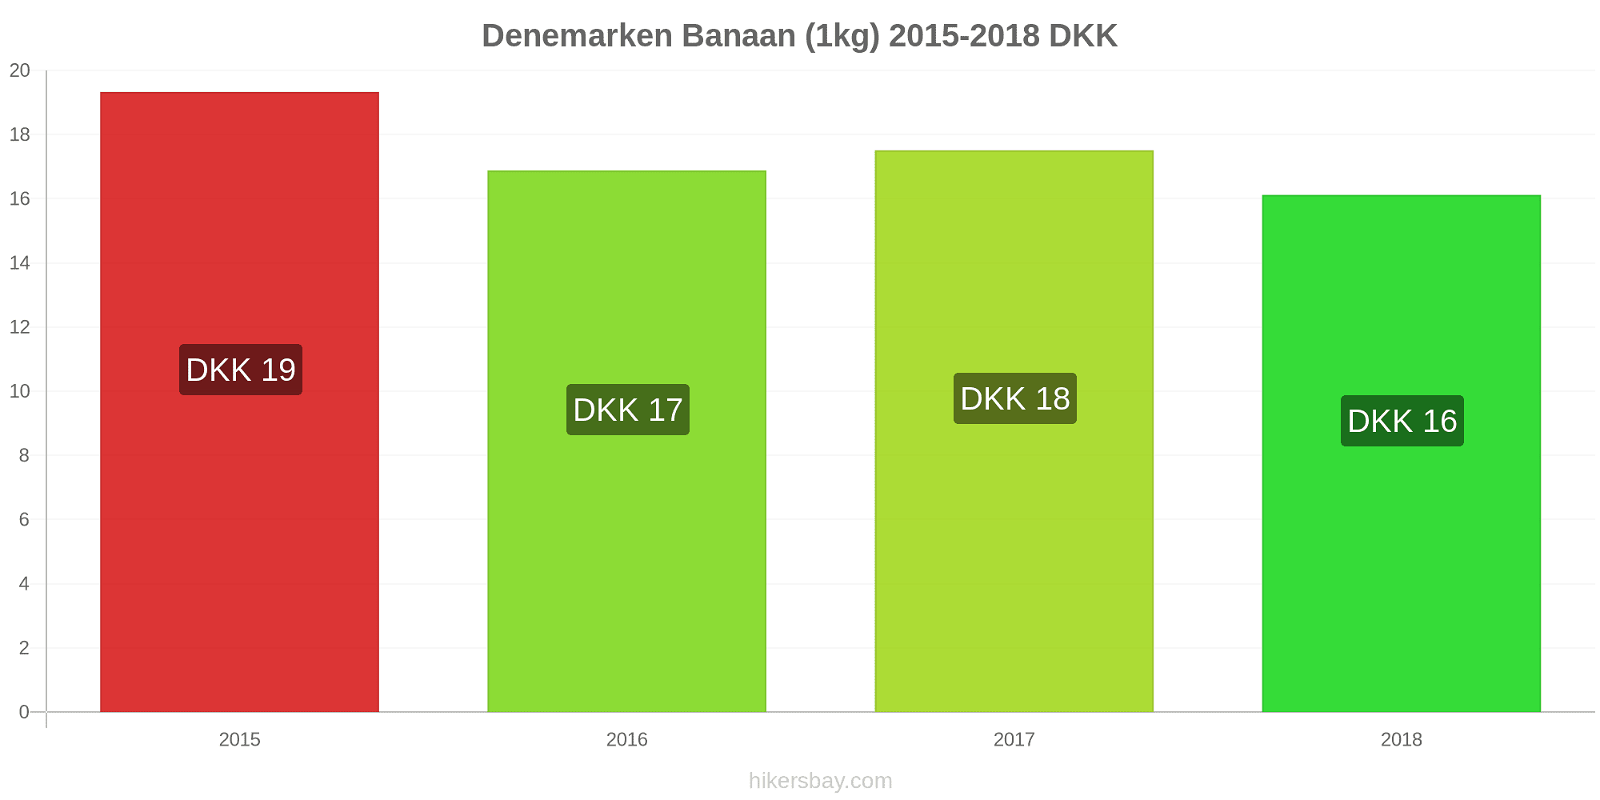 Denemarken prijswijzigingen Bananen (1kg) hikersbay.com